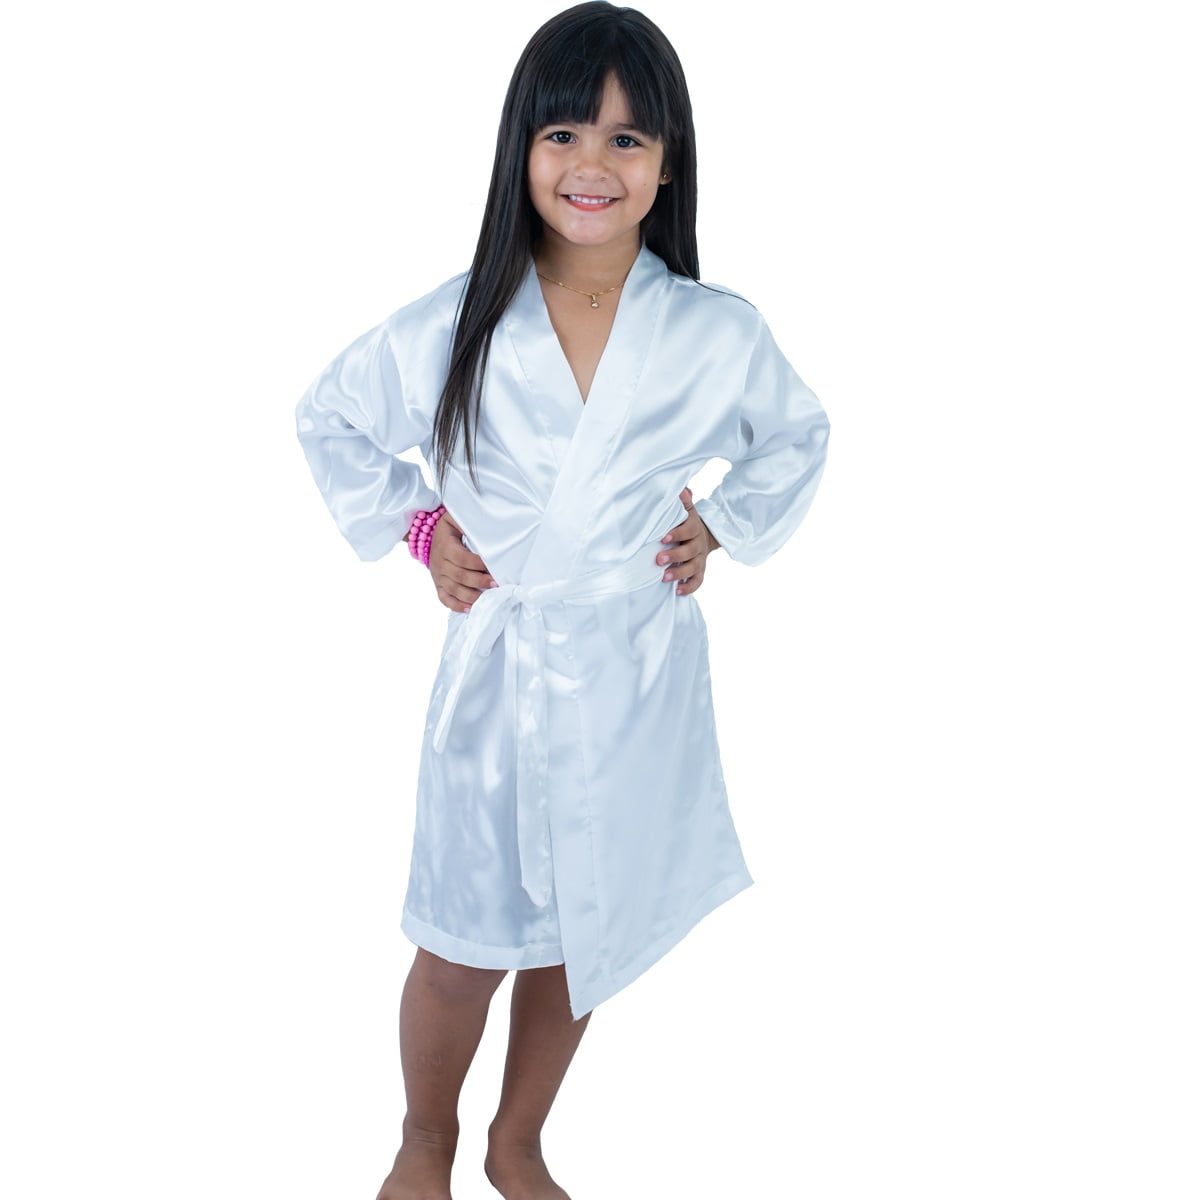 Robe Infantil Feminino Roupão  de Cetim Com Elastano Manga Longa Branco 